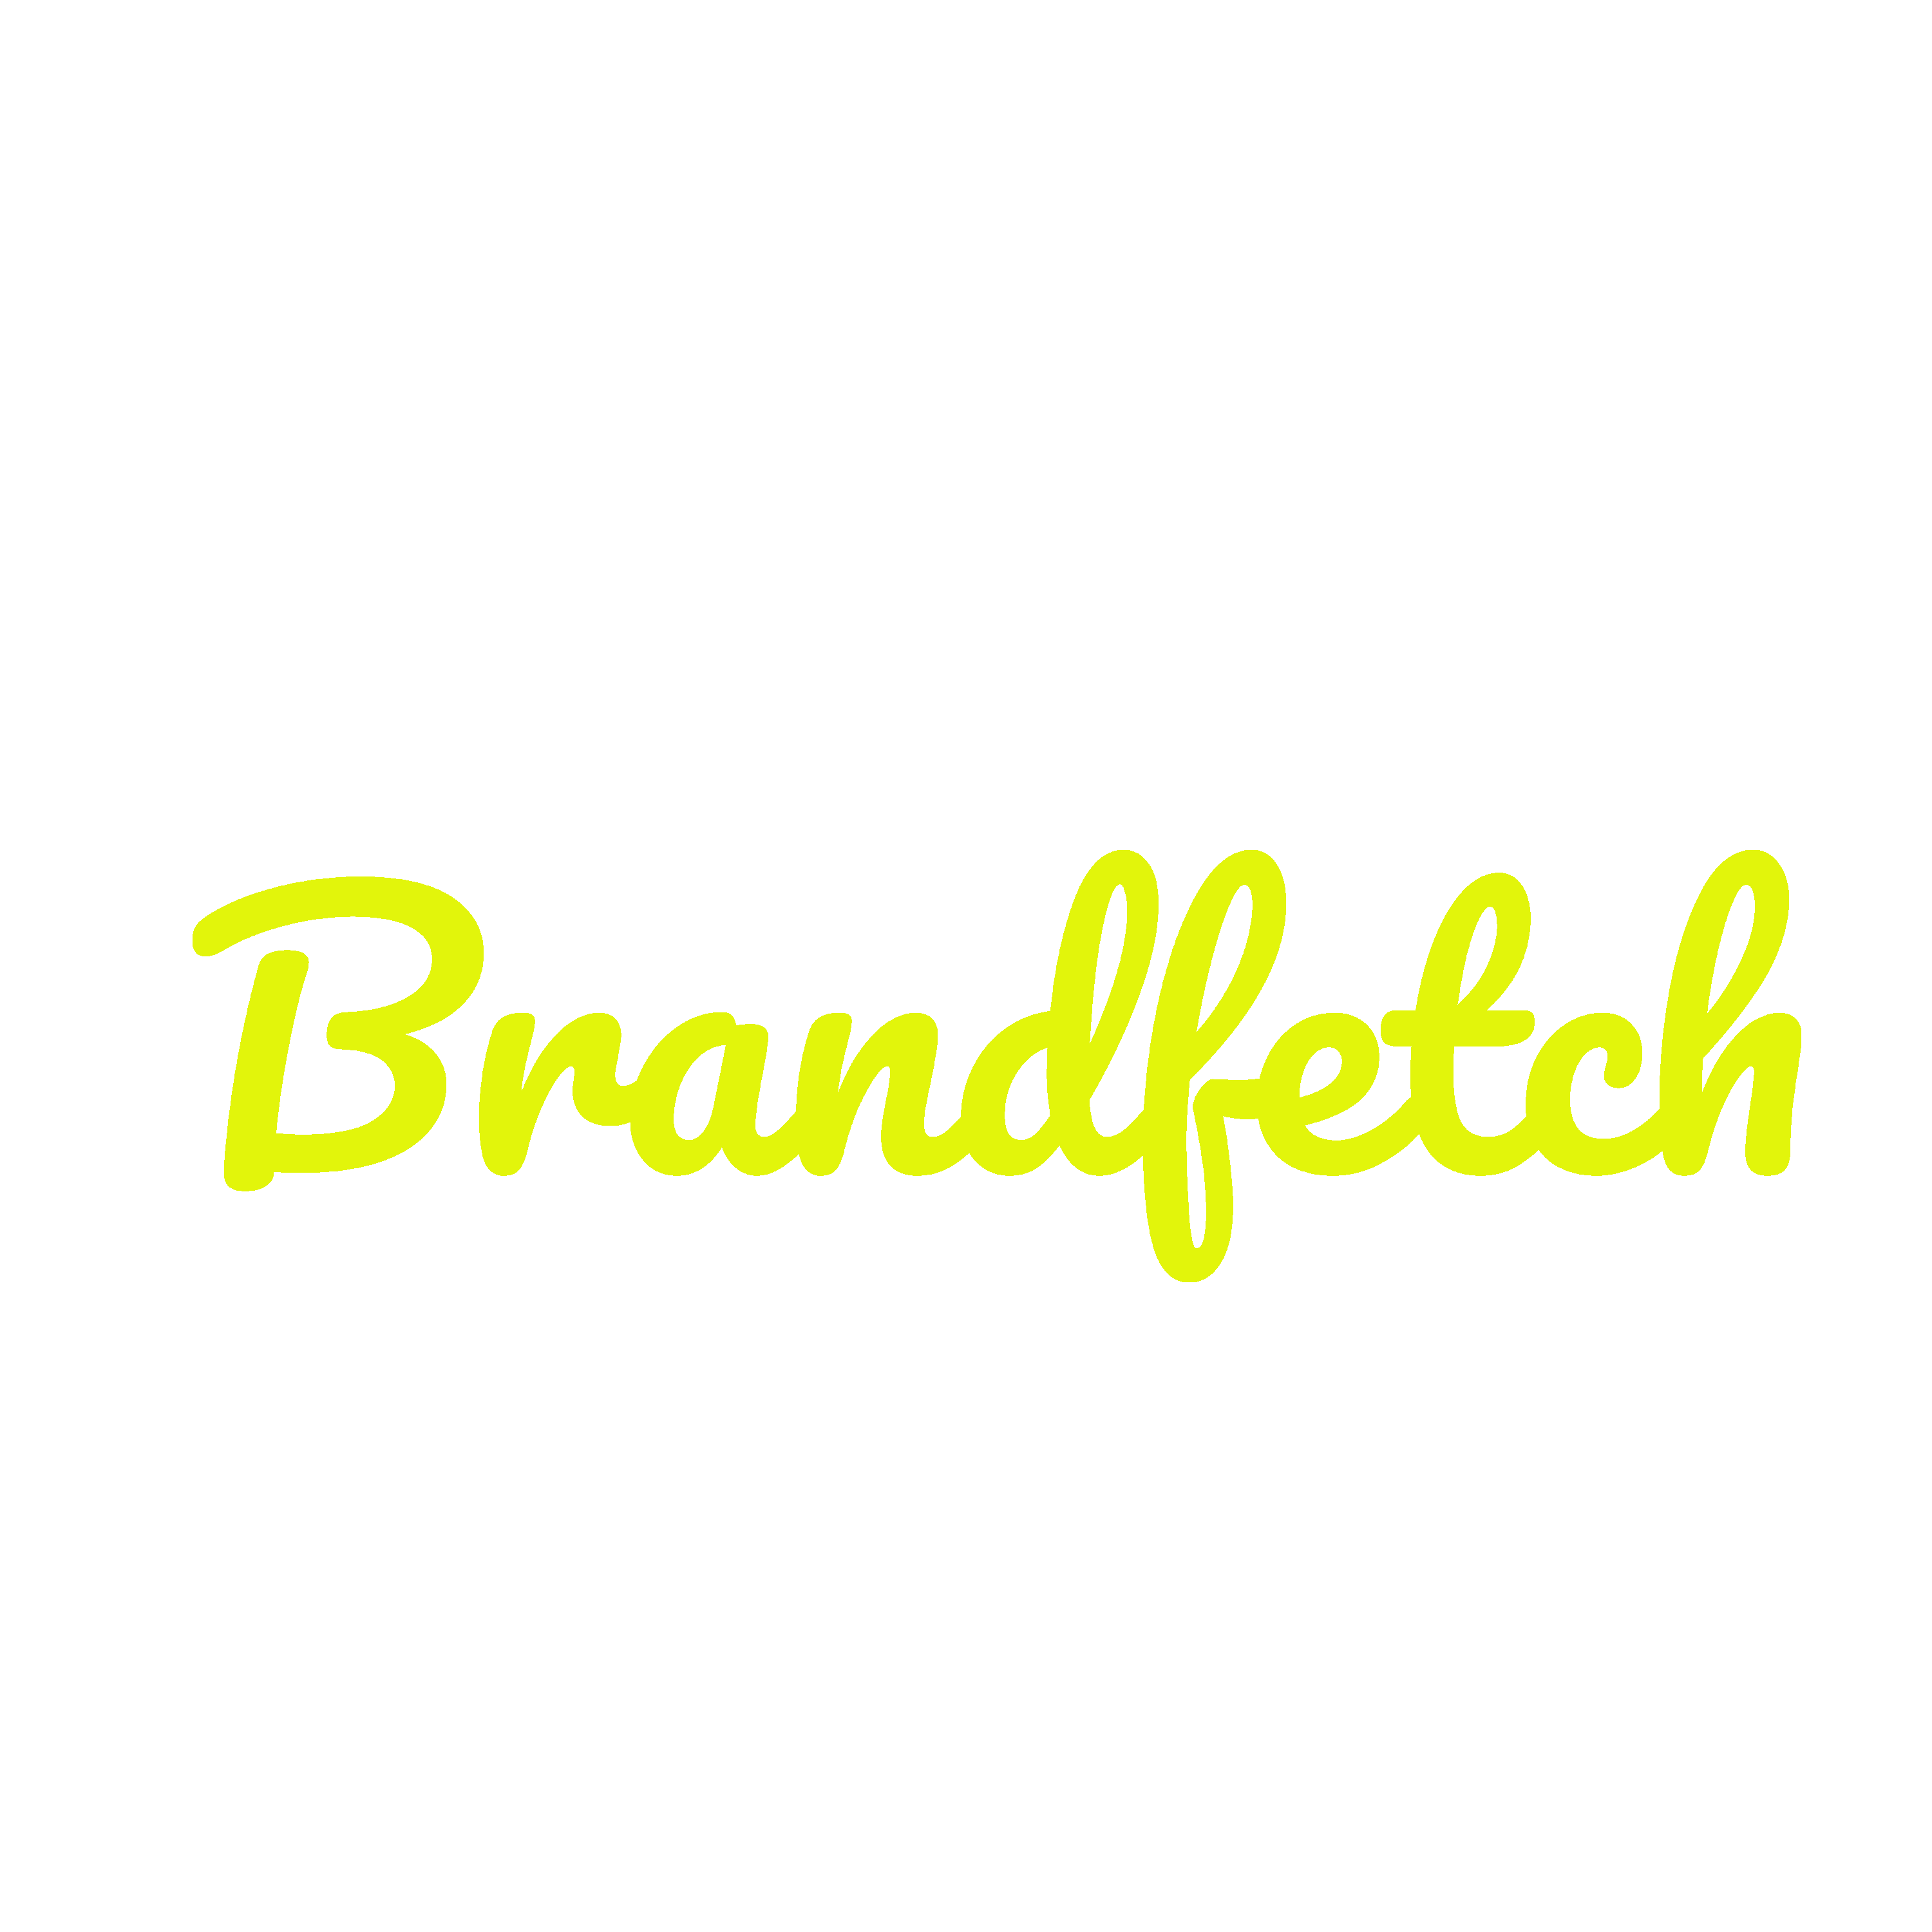 Brandfetch Logo Transparent Gallery